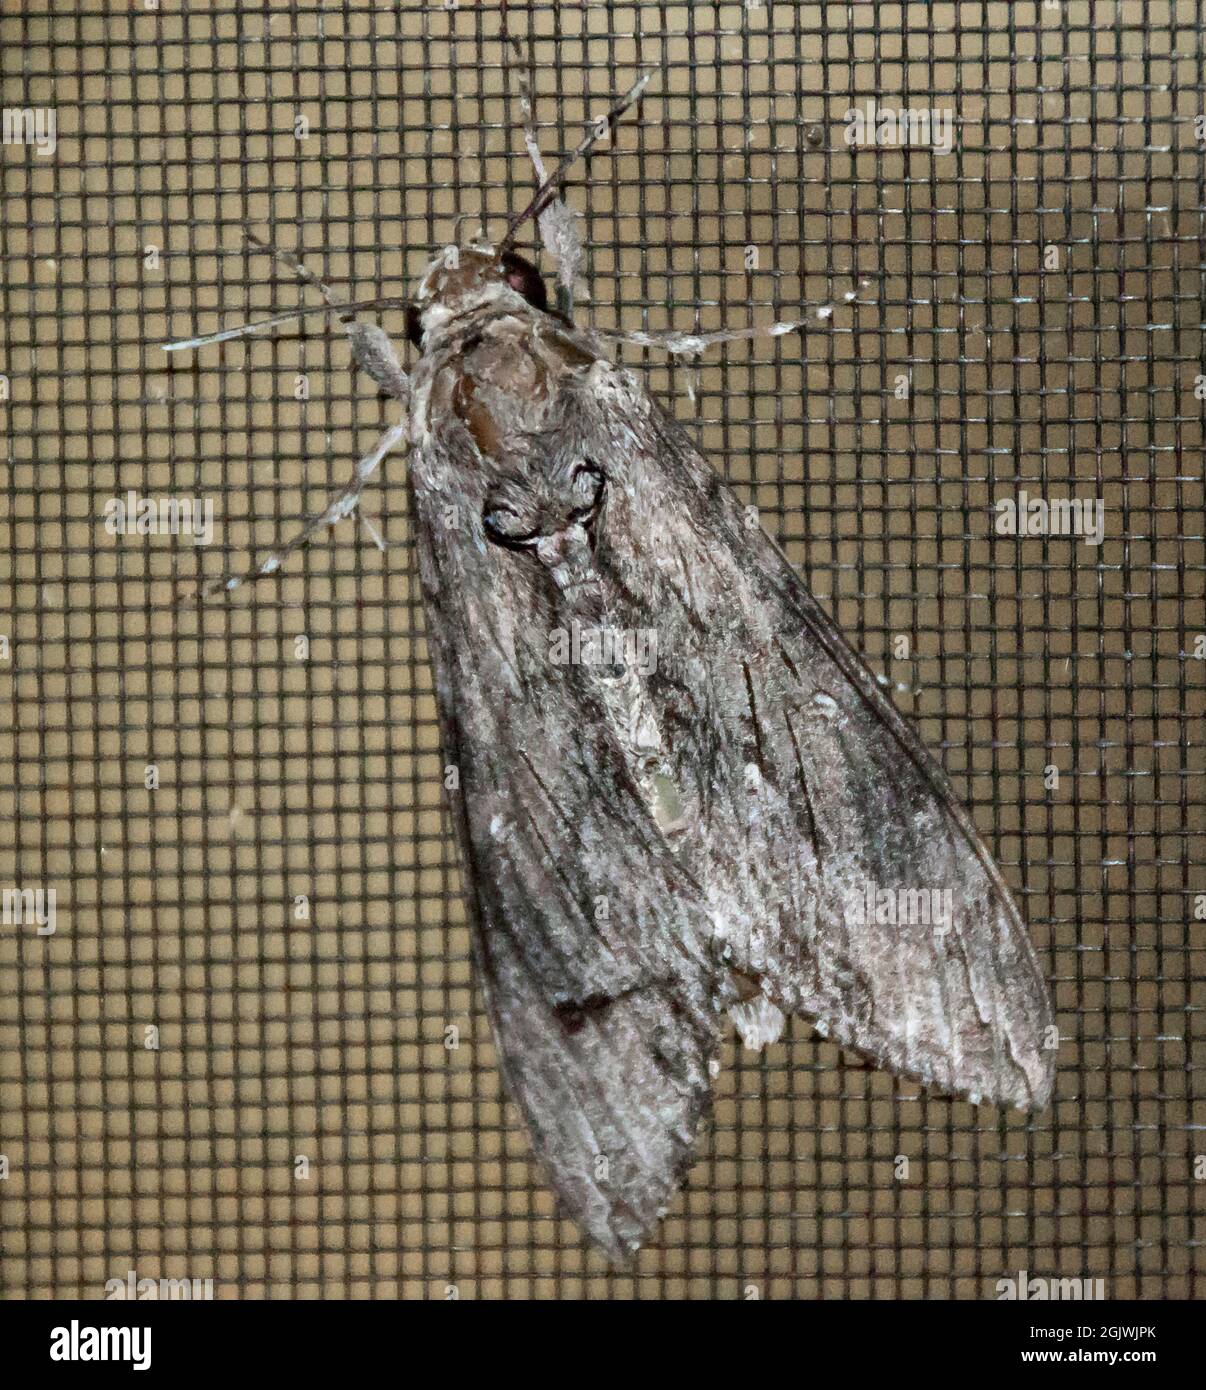 Le papillon australlien Convolvulus, agrius convolvuli, avec des ailes pliées, sur un écran de survol en maille sombre. Motifs marbés. Tamborine Mountain, Australie. Banque D'Images